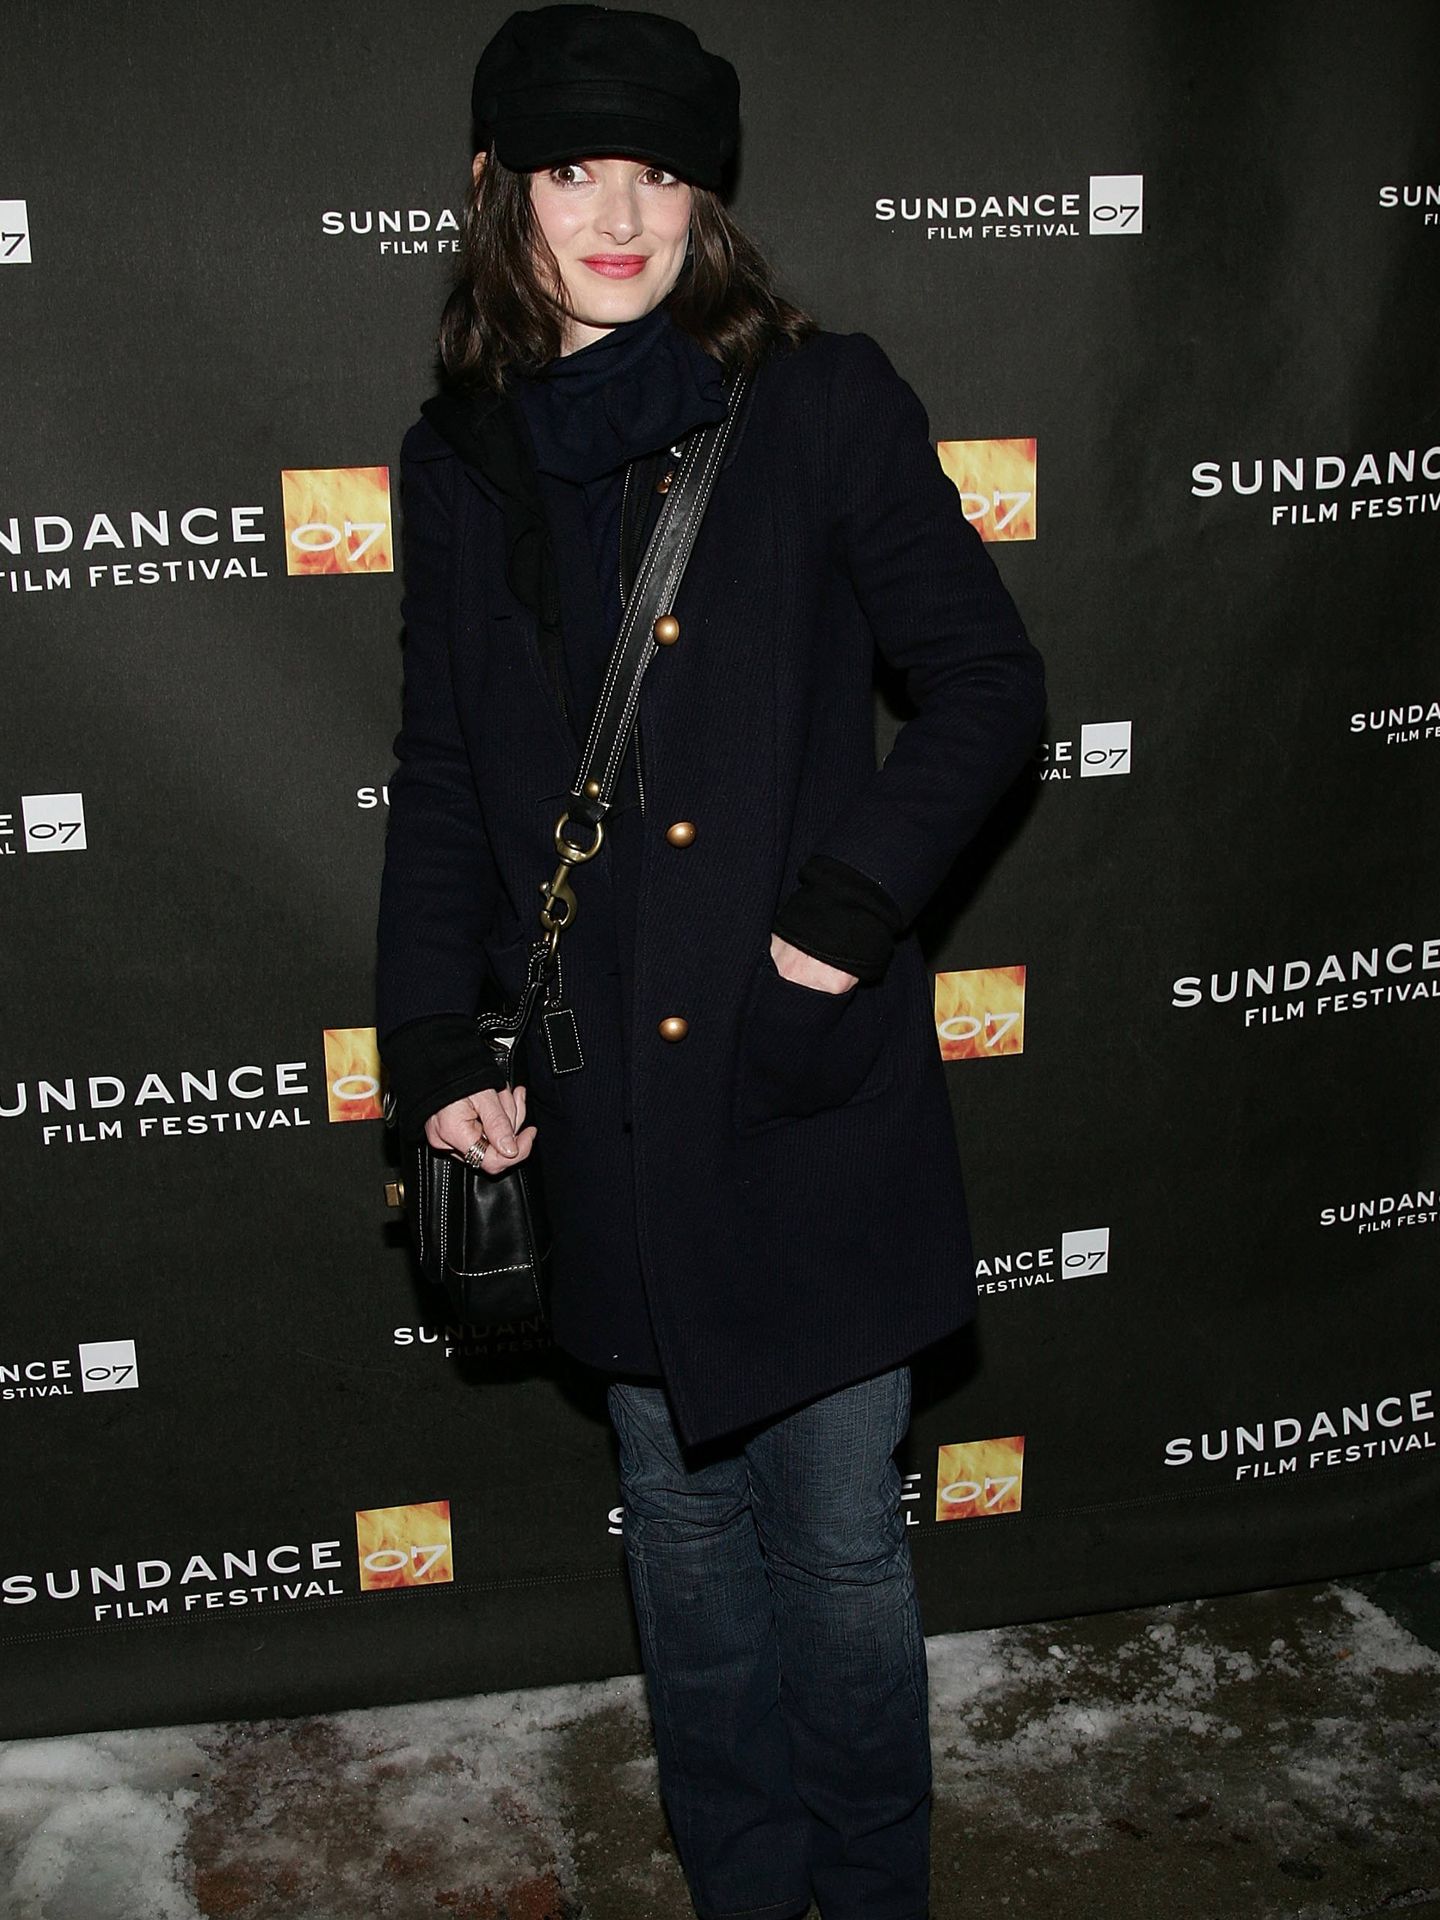 La actriz Winona Ryder luciendo un look desenfadado en el Sundance Film Festival (Foto de Evan Agostini/Getty Images).